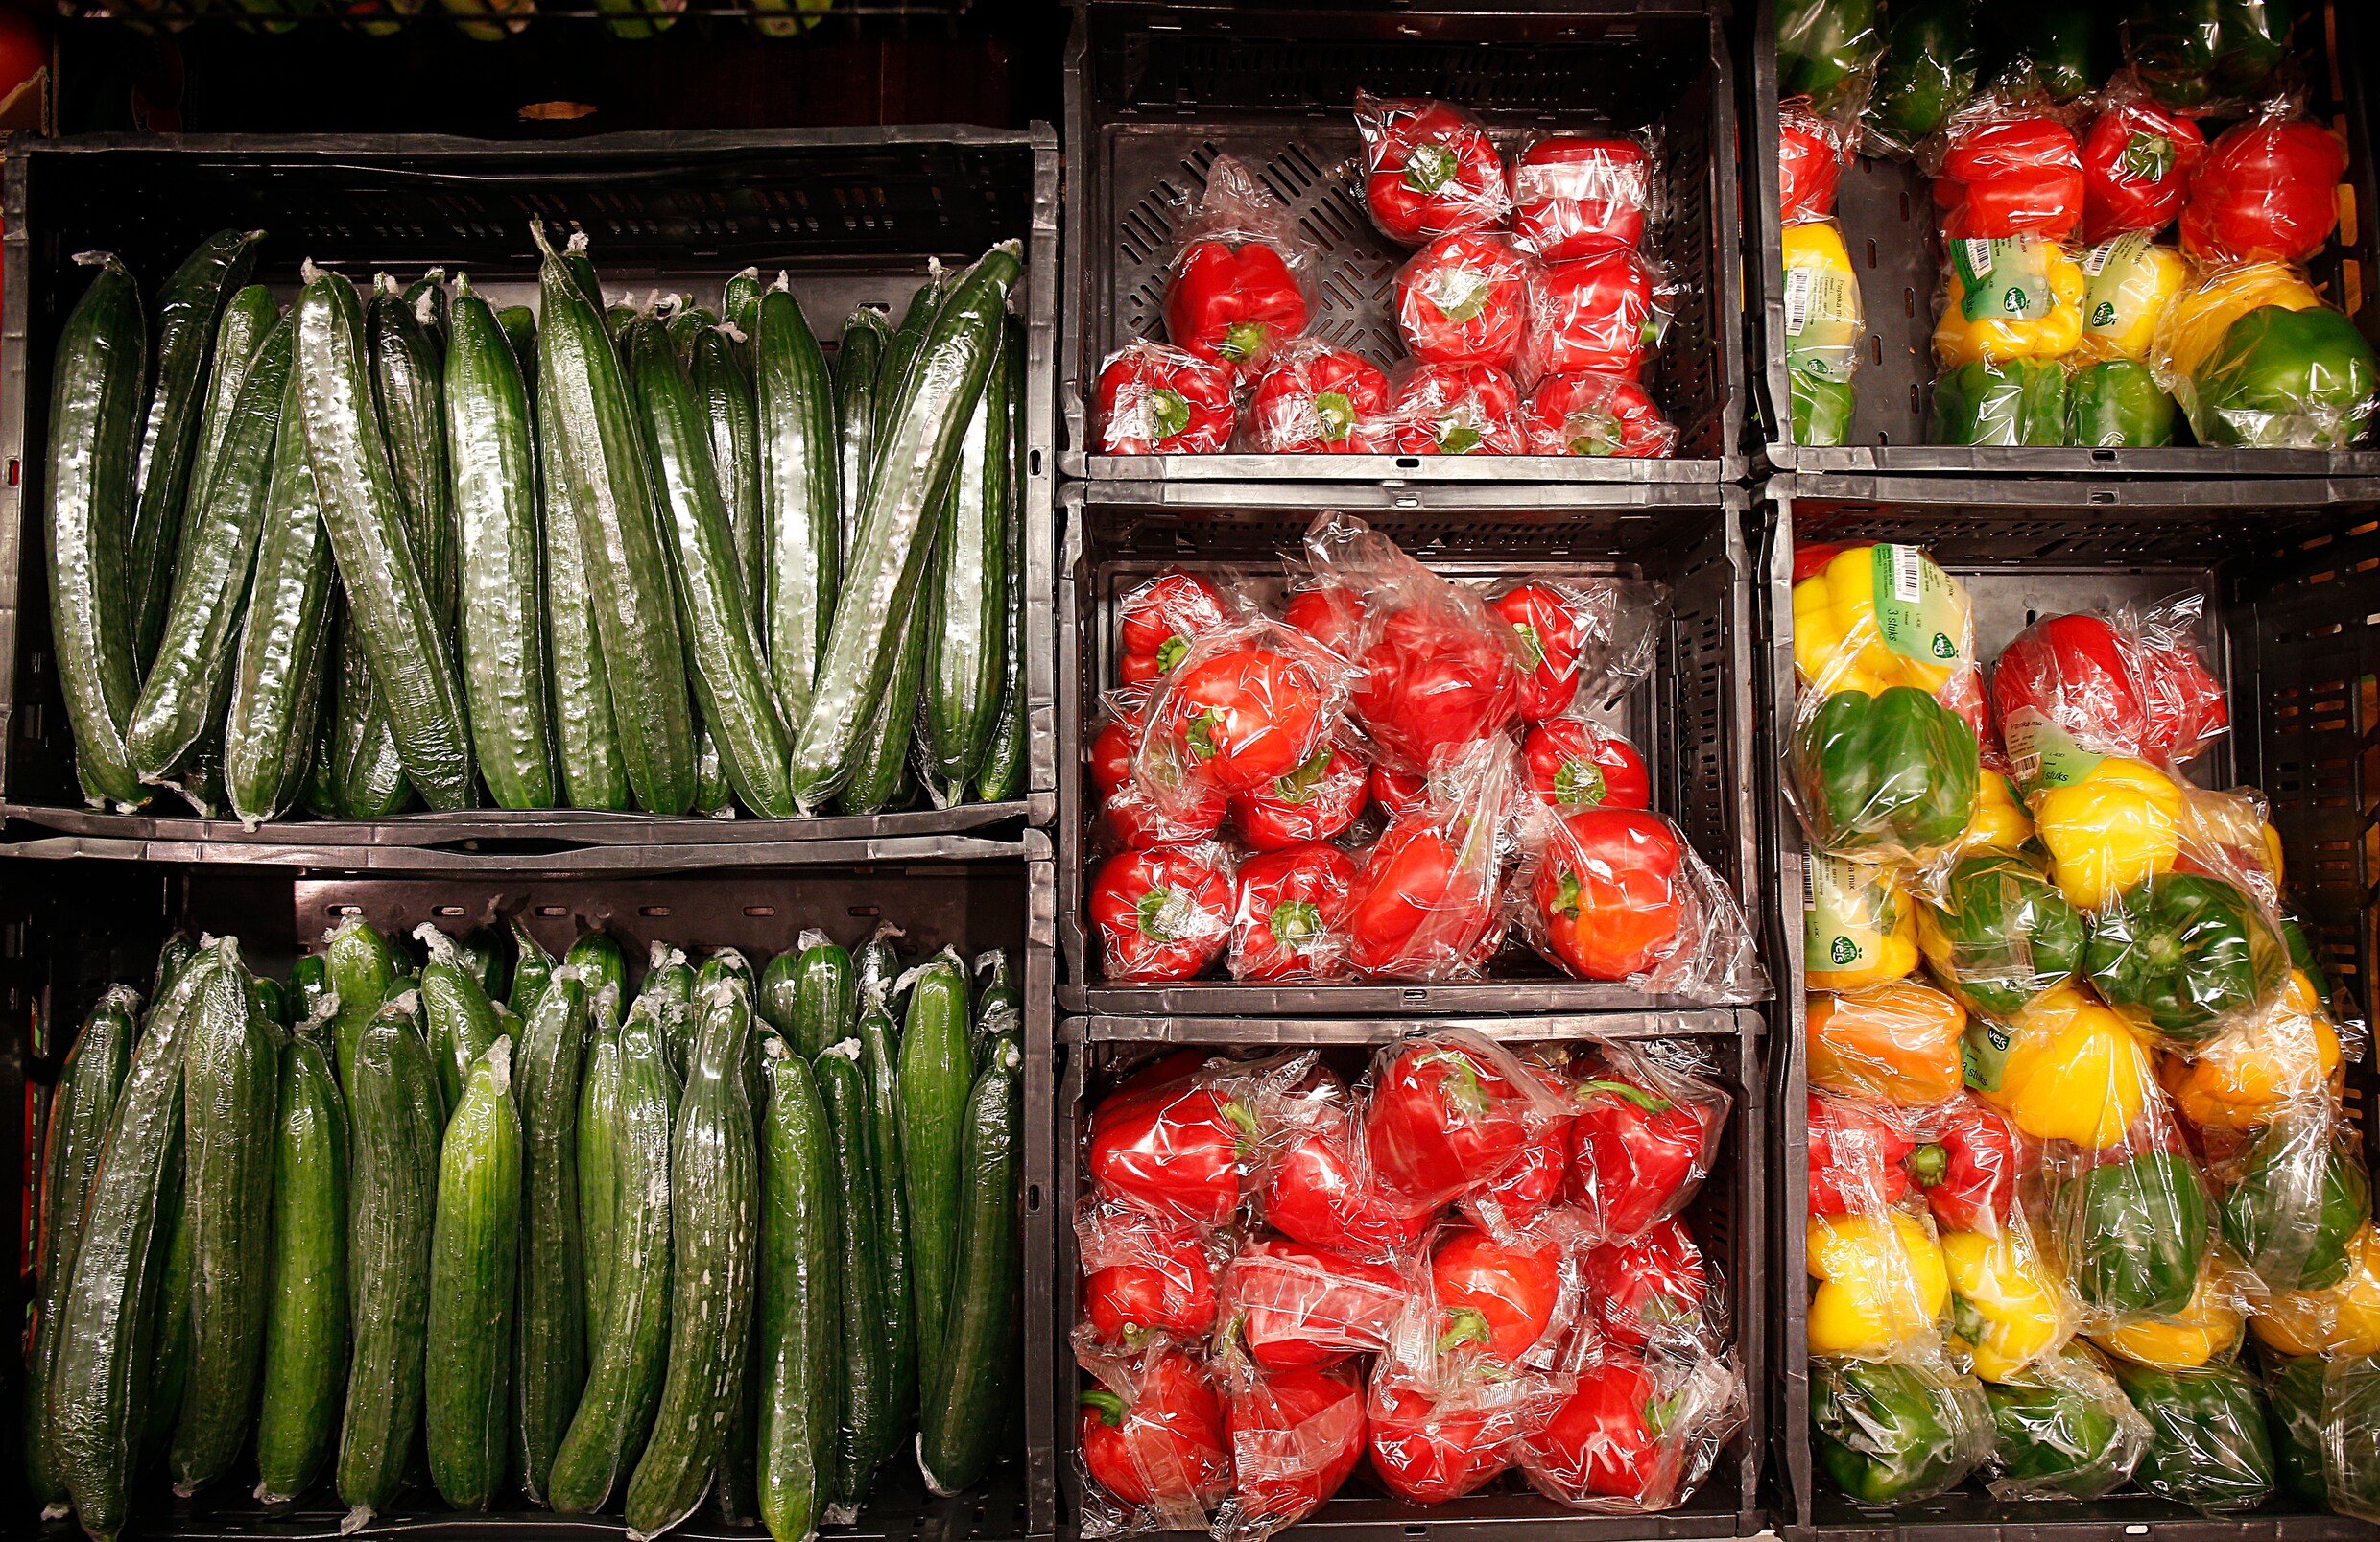 Zijn supermarkten niet ambitieus genoeg of gewoon realistisch als het op plastic aankomt?